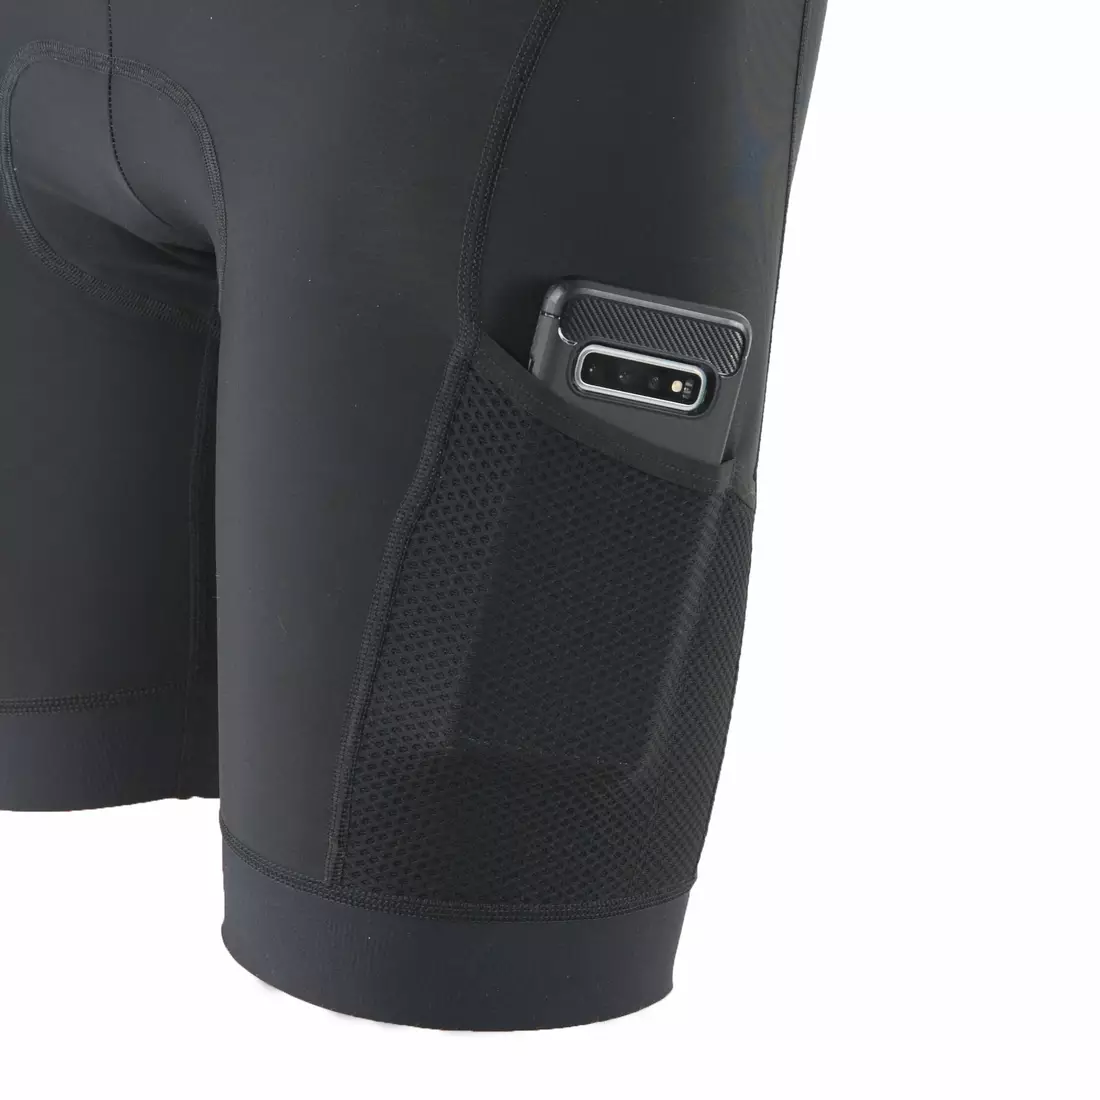 KAYMAQ pantaloni scurți pentru bărbați fără bretele, negru ELSHORM701